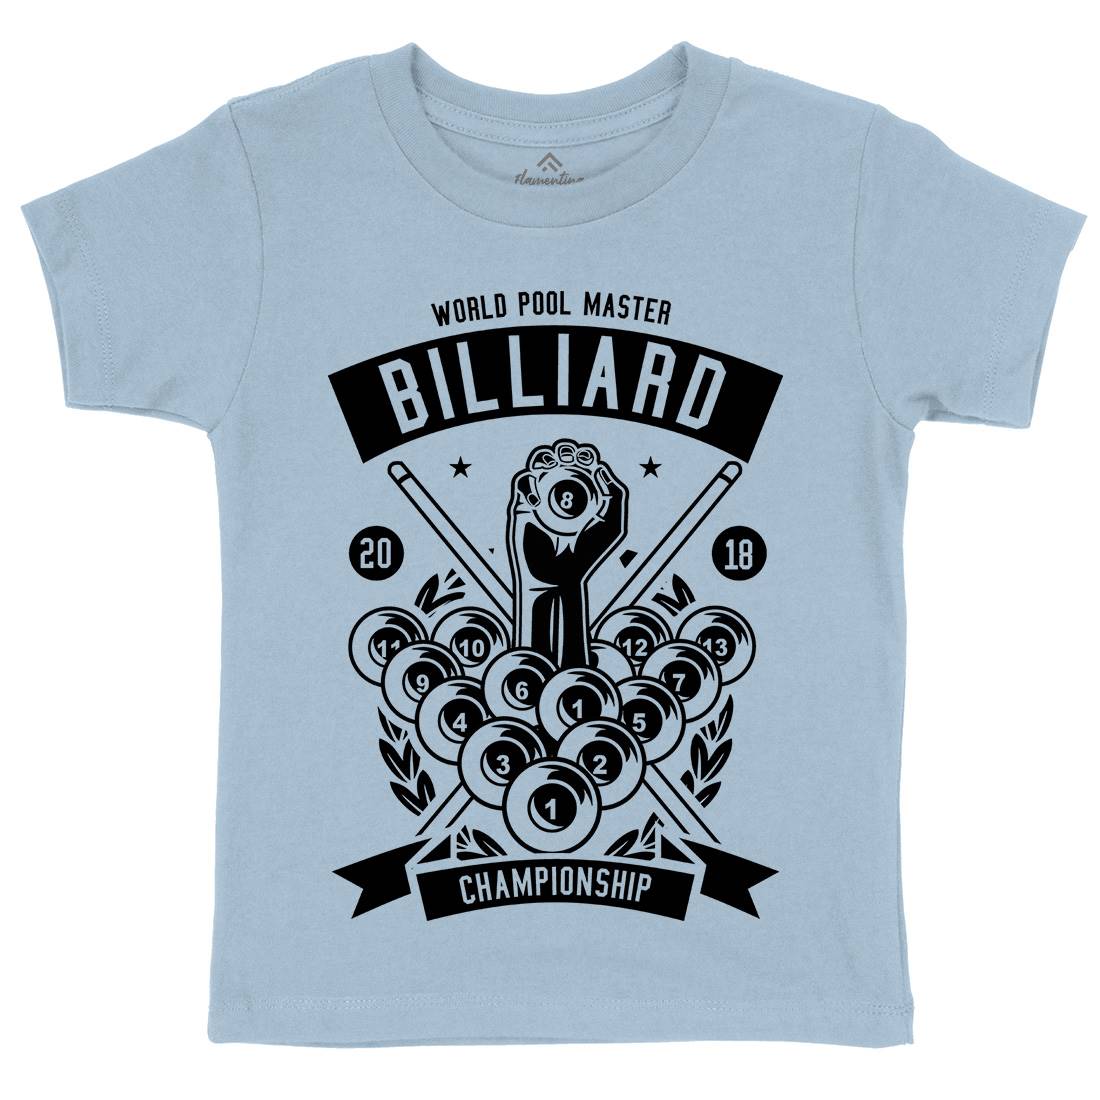 Billiard Championship Kids Crew Neck T-Shirt Sport B499